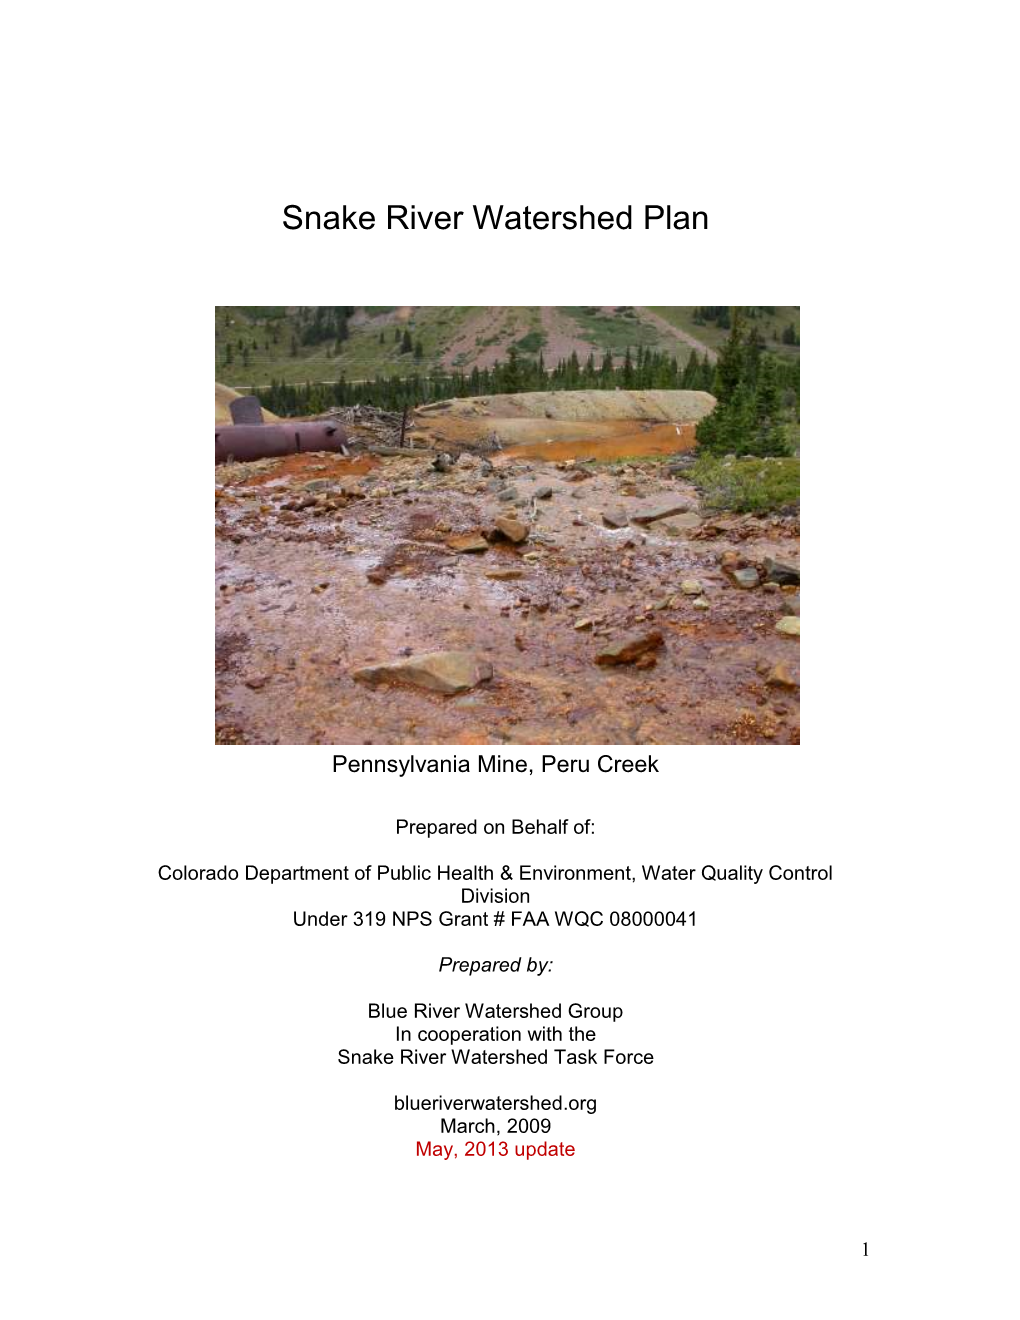 Snake River Watershed Plan 2013